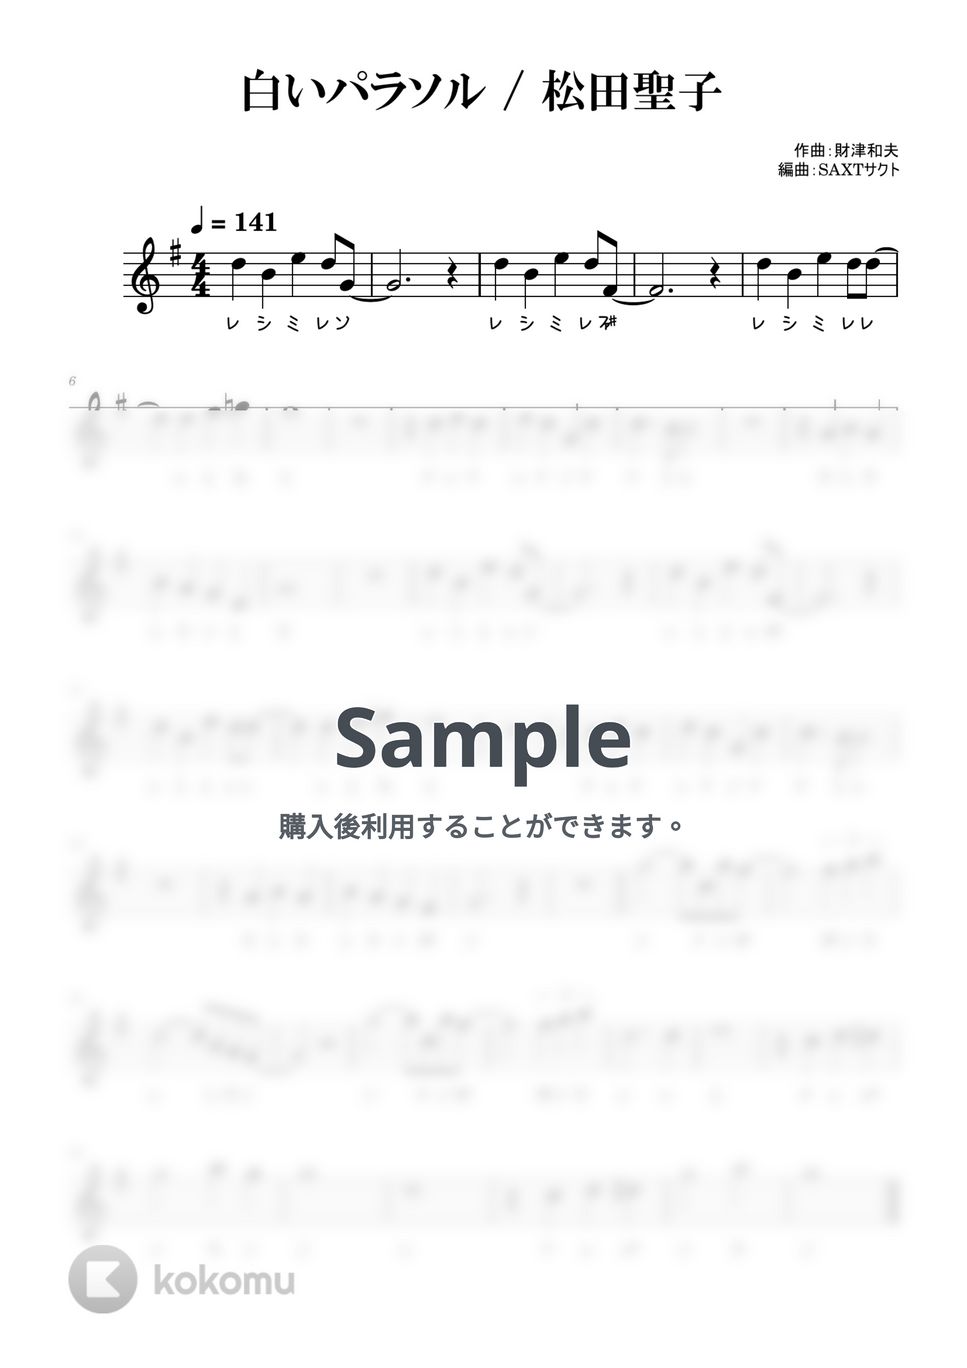 松田聖子 - 白いパラソル (めちゃラク譜・ドレミあり) by SAXT